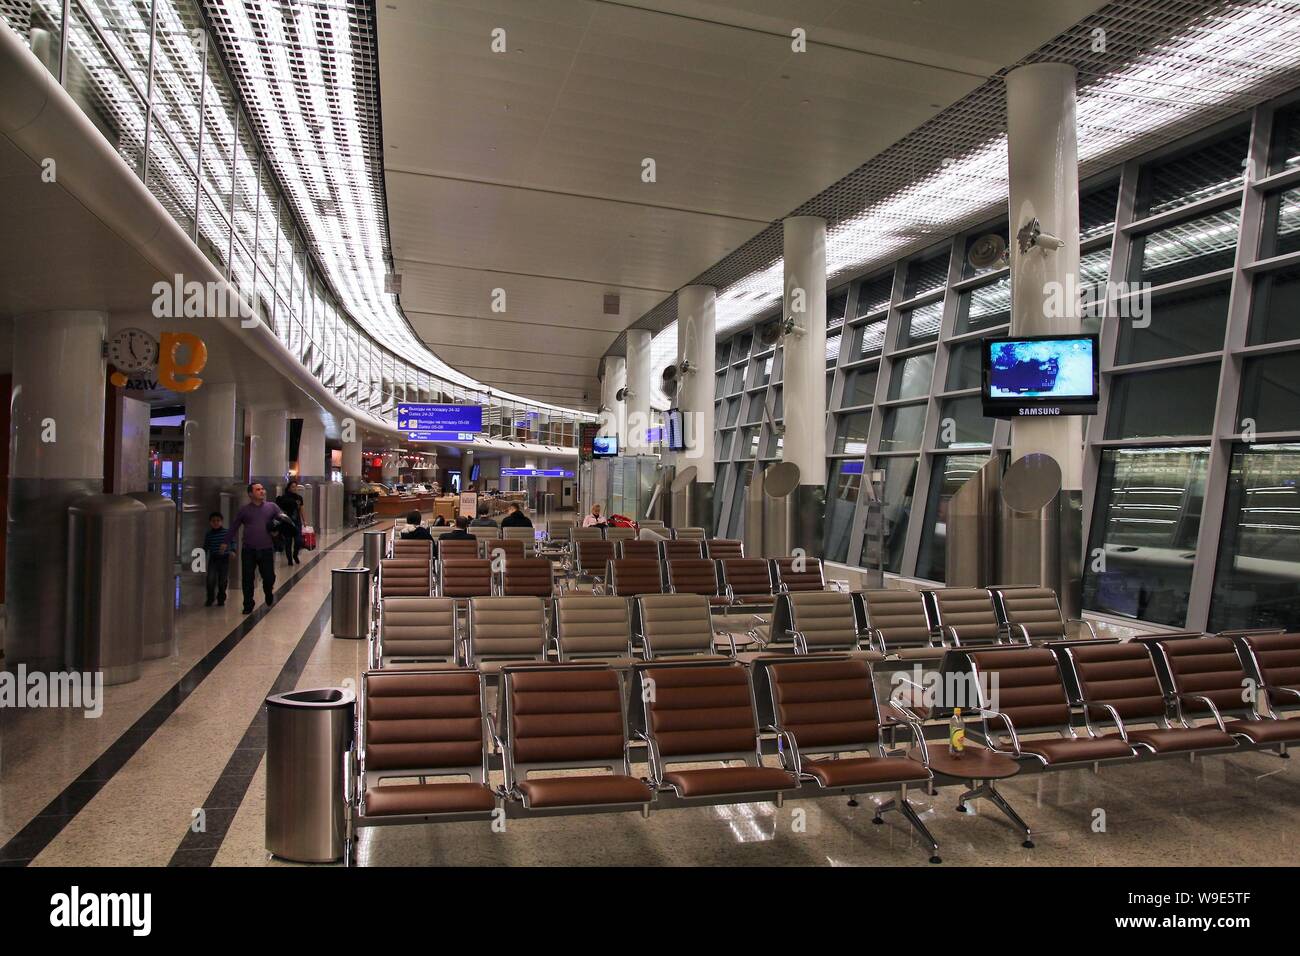 Mosca, Russia - 29 gennaio 2011: la gente in attesa nel terminale D di Aeroporto Internazionale di Mosca Sheremetyevo in Russia. Essa aveva 31,612,000 passeggeri in 2 Foto Stock